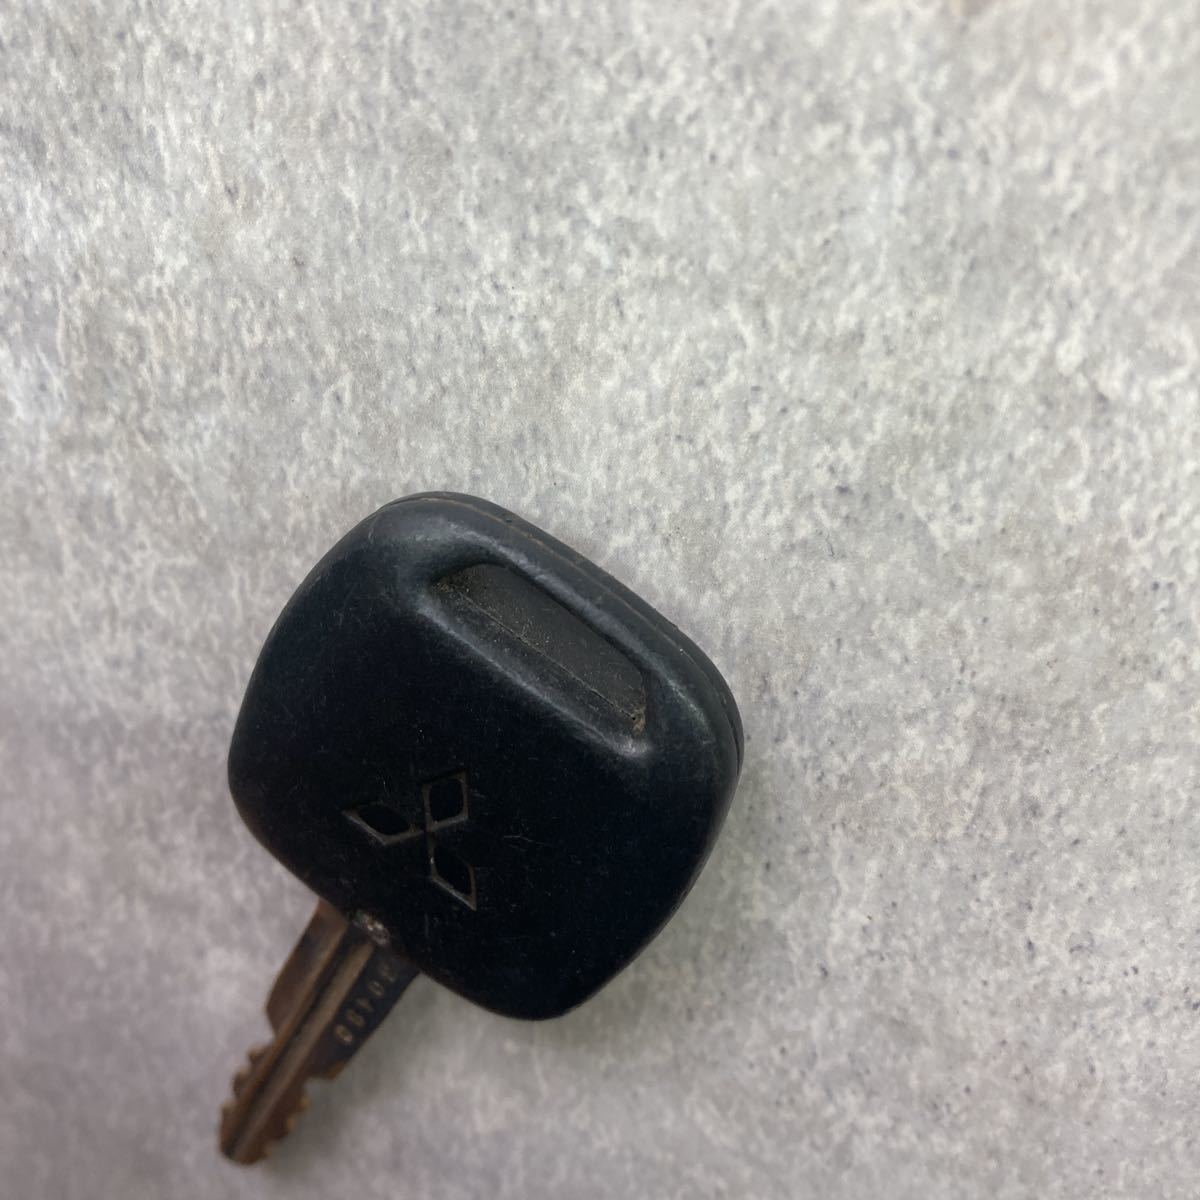  Мицубиси Mitsubishi MITSUBISHI оригинальный дистанционный ключ ключ 2 кнопка старый зеленый основа работоспособность не проверялась Pajero Lancer Delica EK Wagon Minicab Toppo K50850